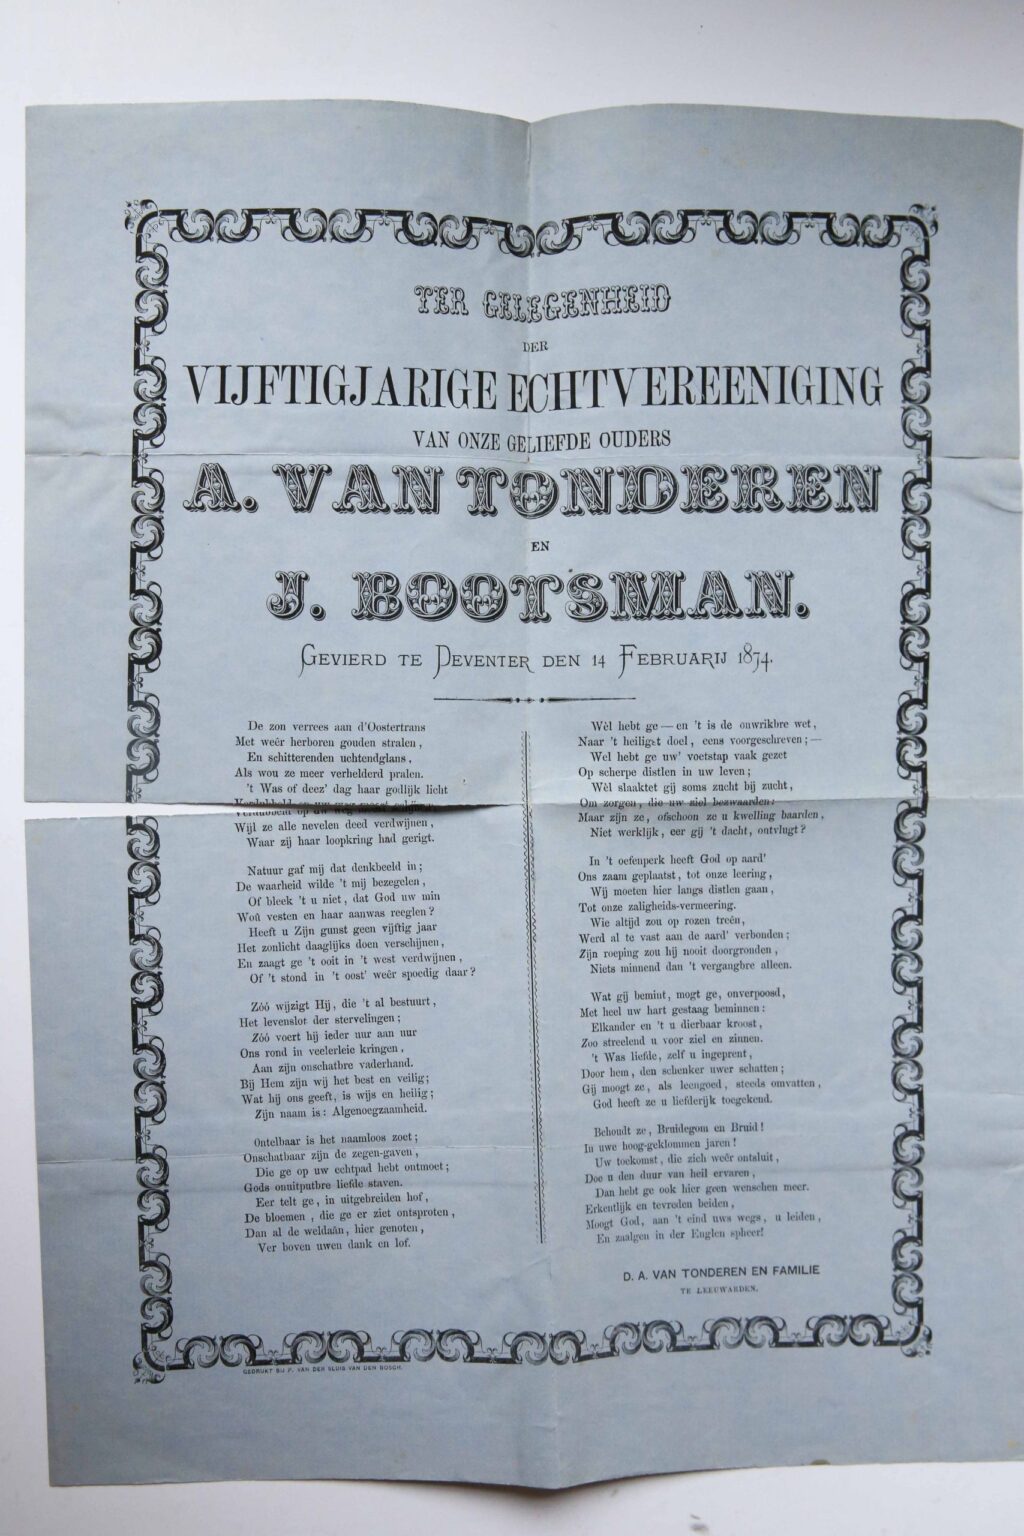 Ter gelegenheid der vijftigjarige echtvereeniging van onze geliefde ouders A. Van tonderen en J. Bootsman gevierd te Deventer den 14 februari 1874. z.p., gedrukt bij P. van der Sluis van den Bosch. Plano, op blauw papier met rond het gedicht een bewerkte rand.